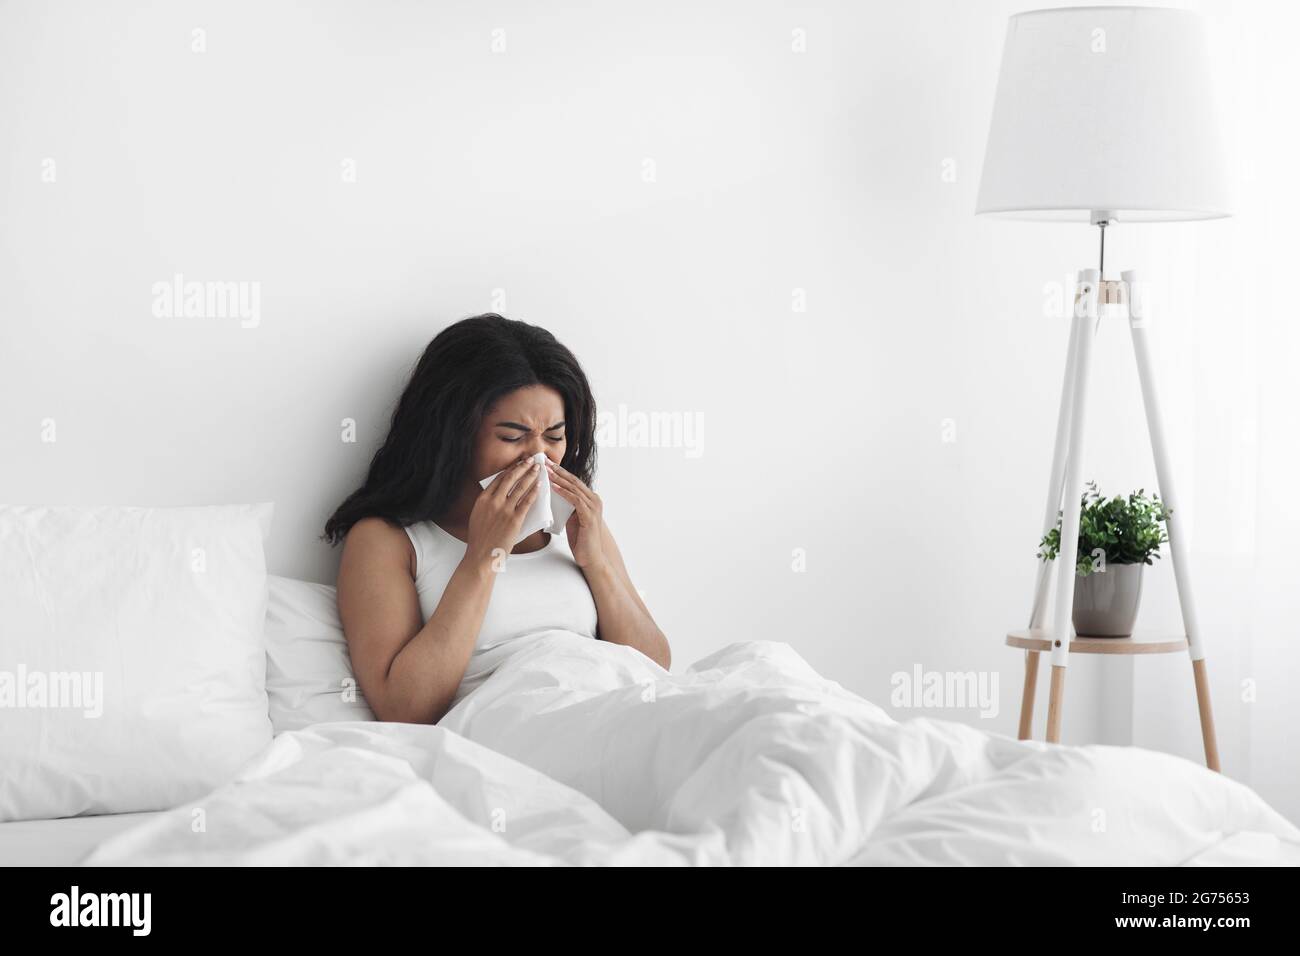 Día de enfermedad en casa. Una mujer afroamericana enferma tiene secreción nasal, tos y resfrío, nariz que sopla, sentada en la cama, espacio de copia Foto de stock